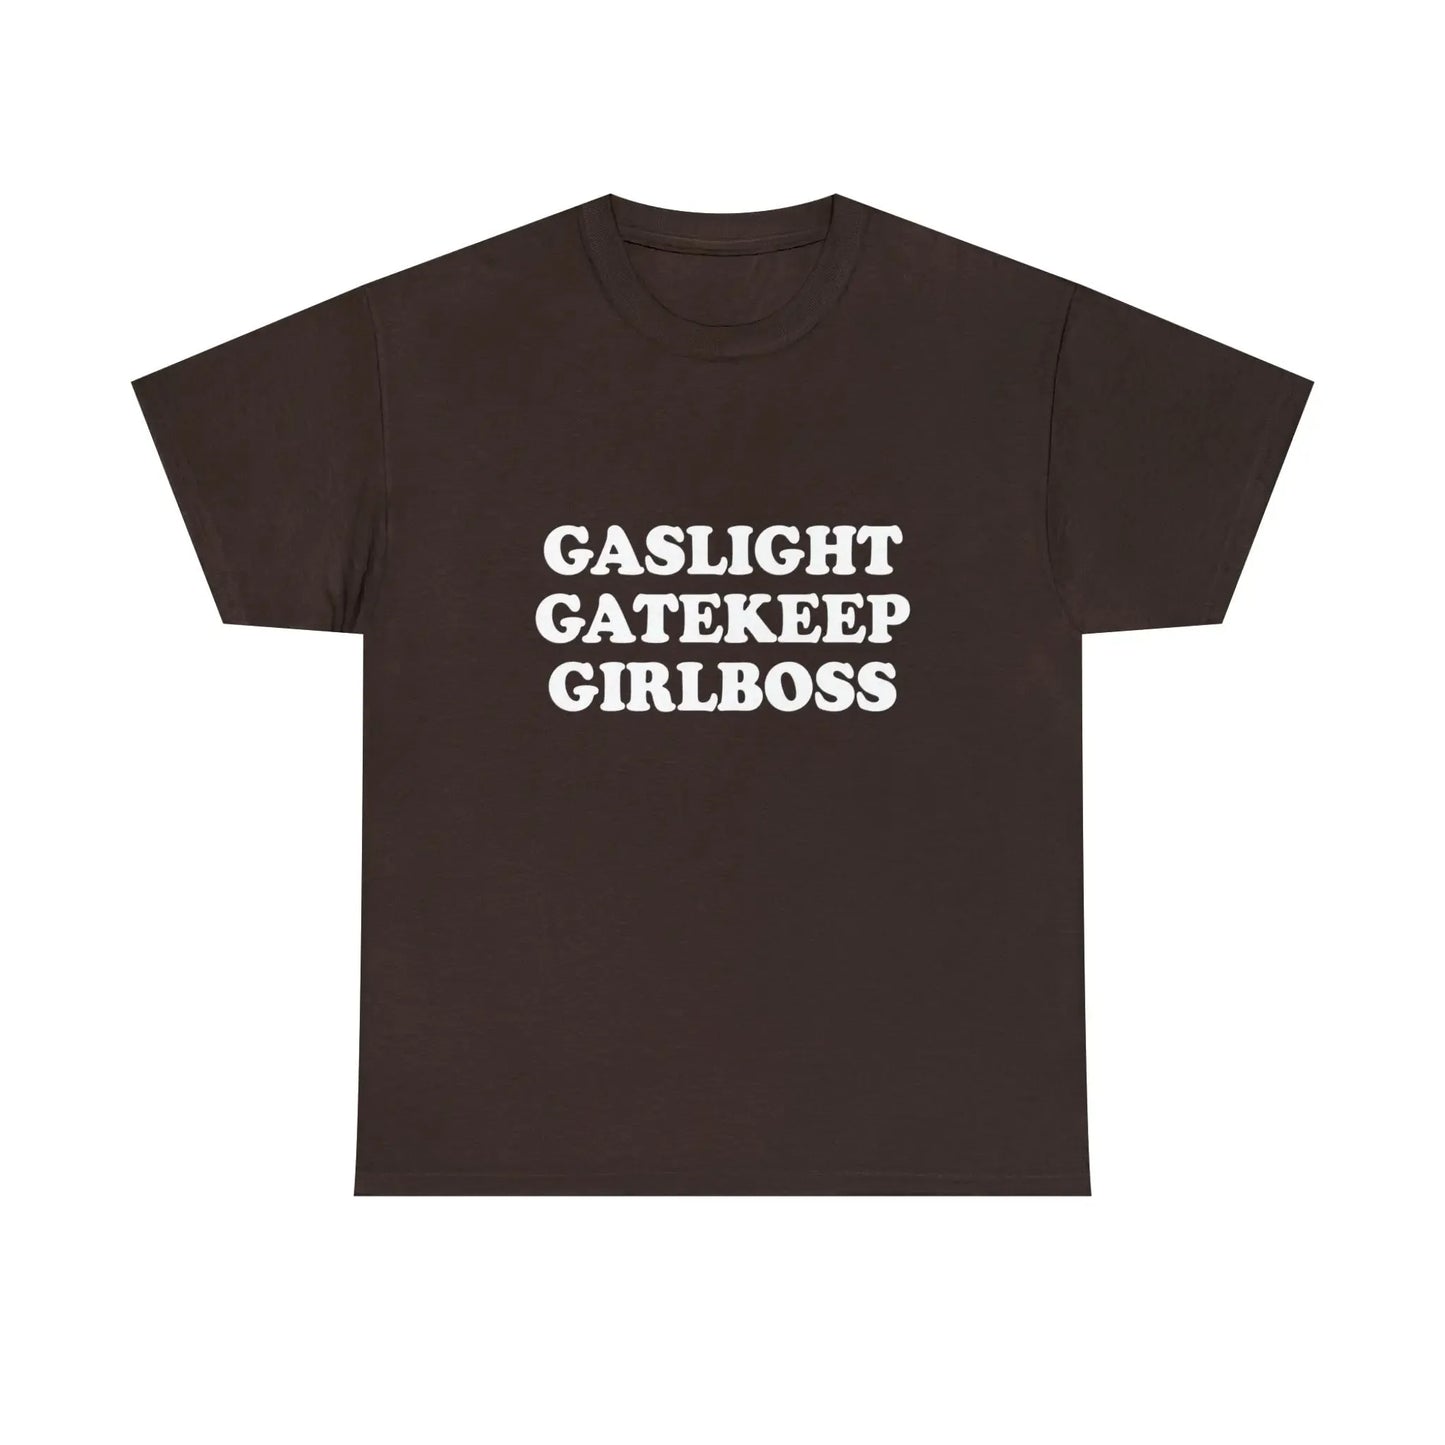 Gaslight Gatekeep Girlboss T-Shirt - Failure International failureinternational.com store brand tiktok instagram